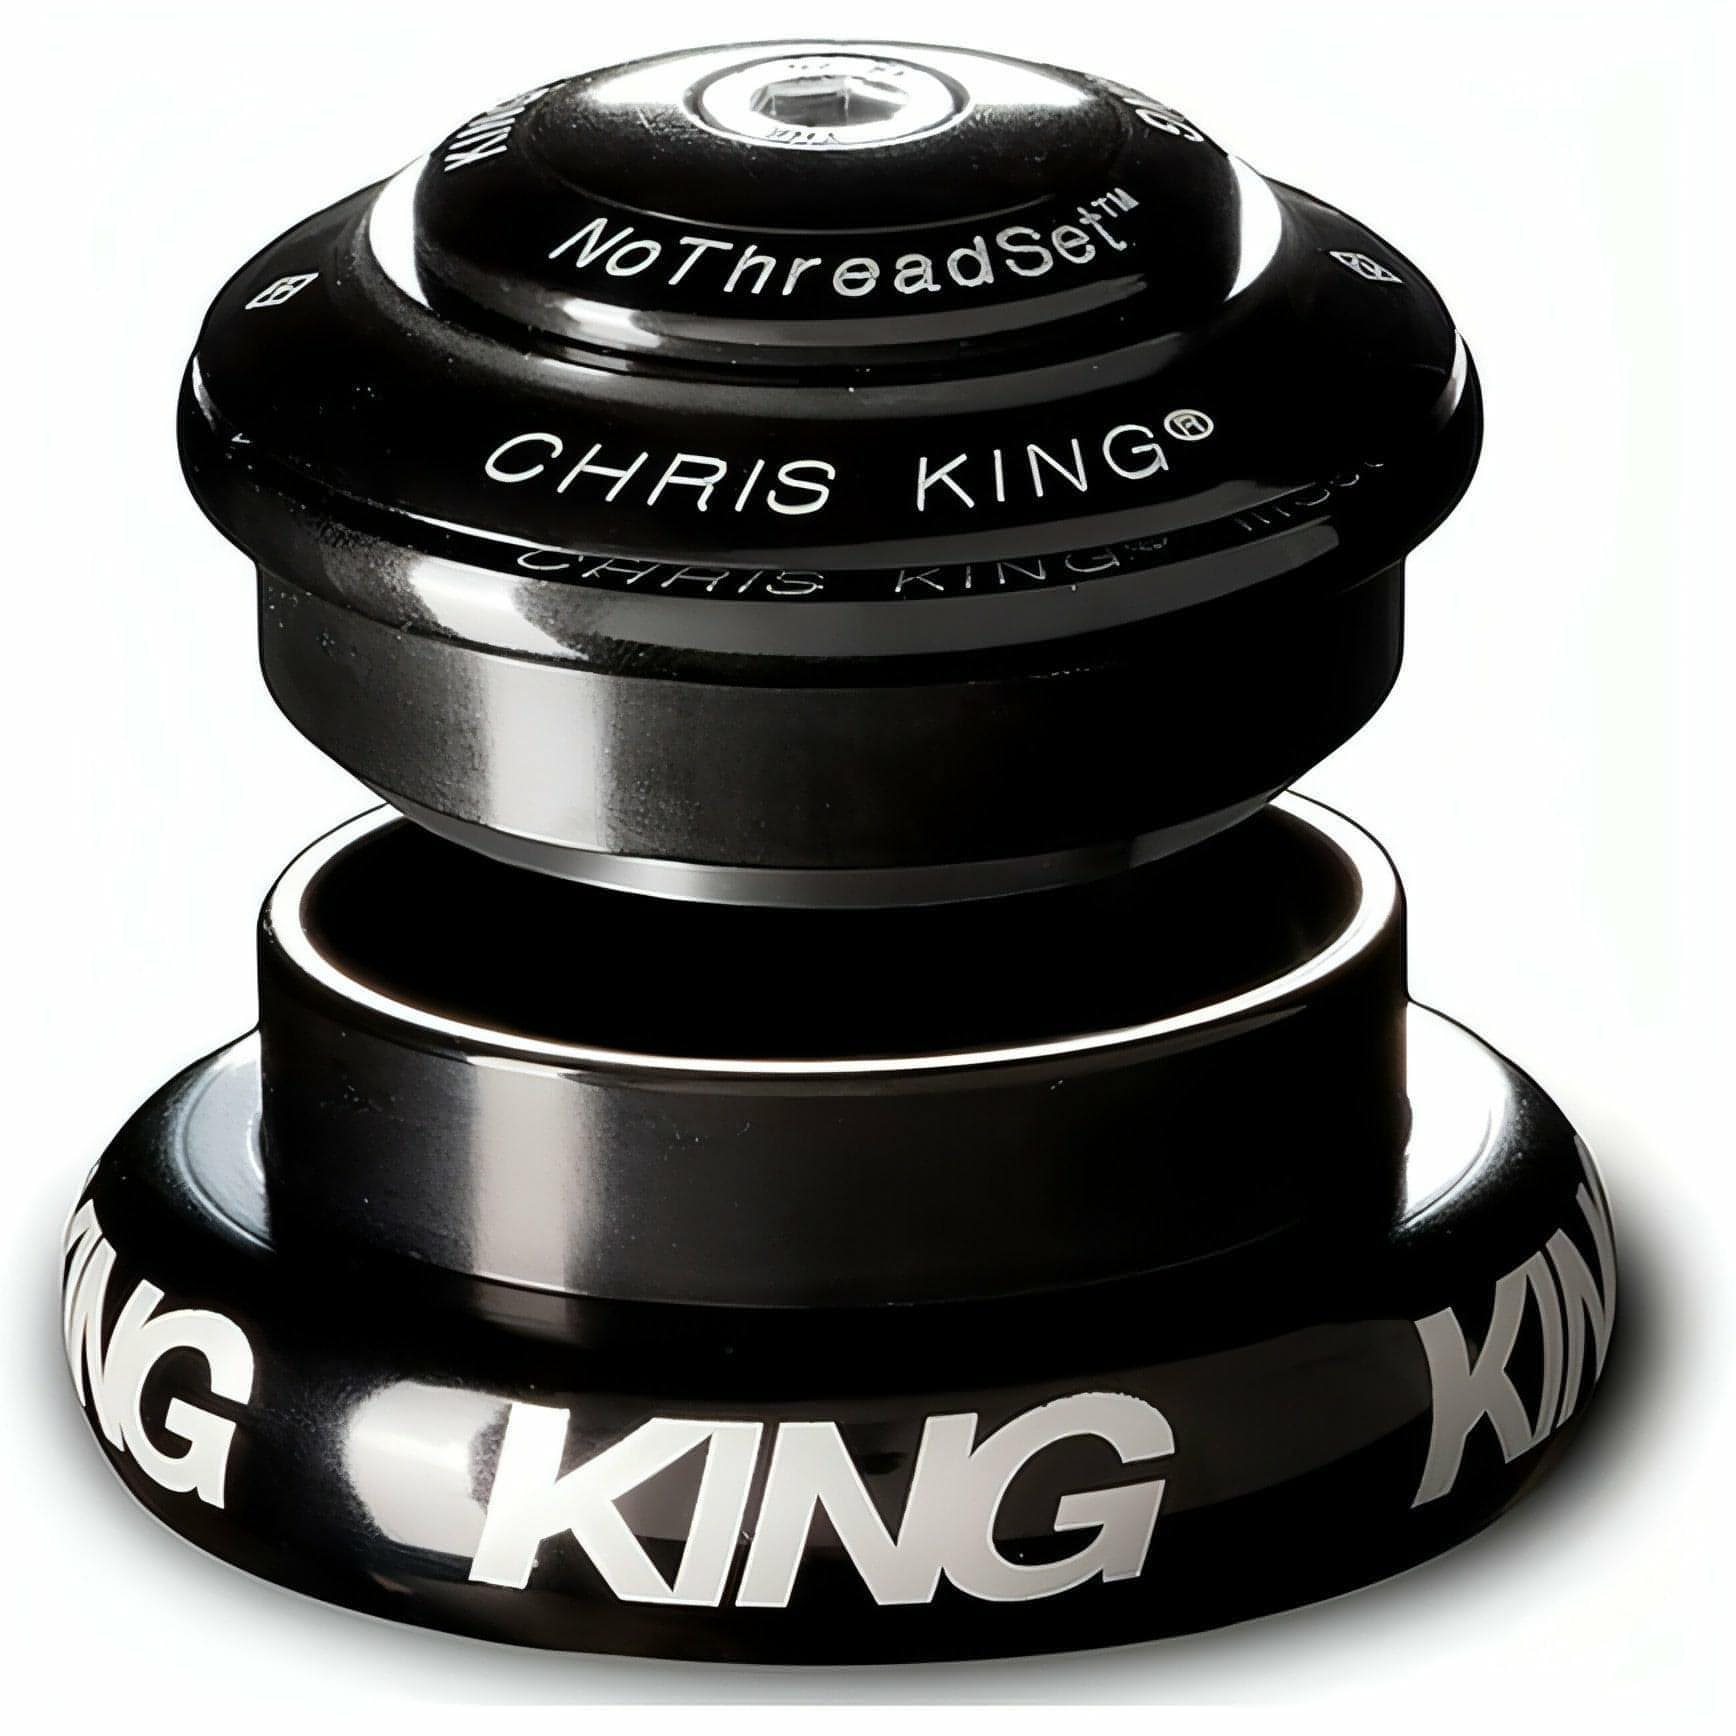 Chris King Inset 8 ZS44/EC44 Headset - Black 841529058819 - Start Fitness